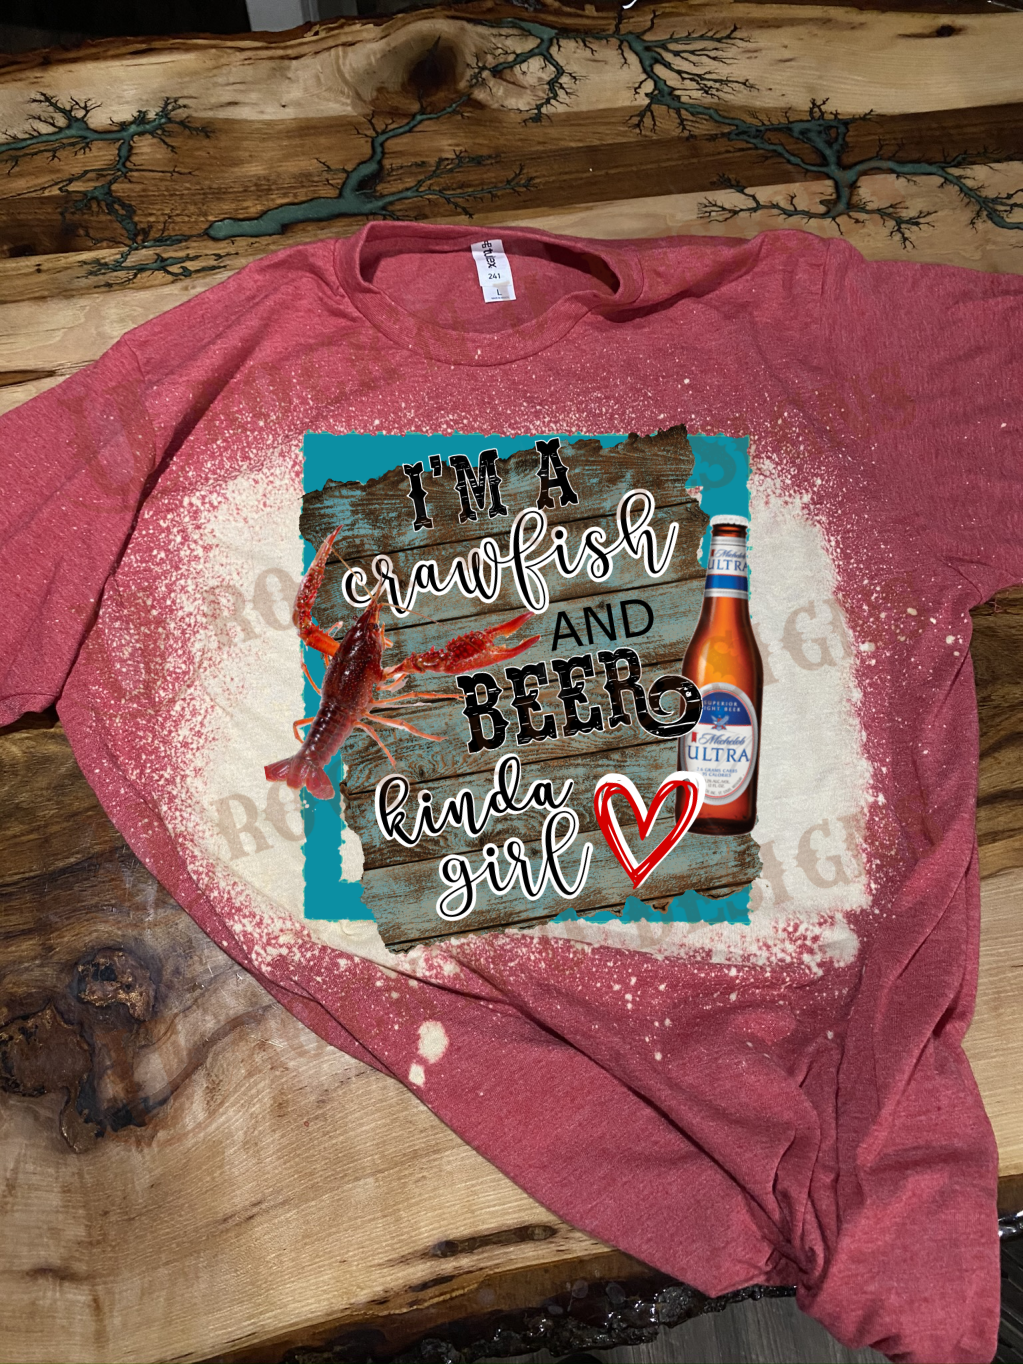 I'm a Crawfish & Beer Kinda Girl! Custom Bleached T- shirt